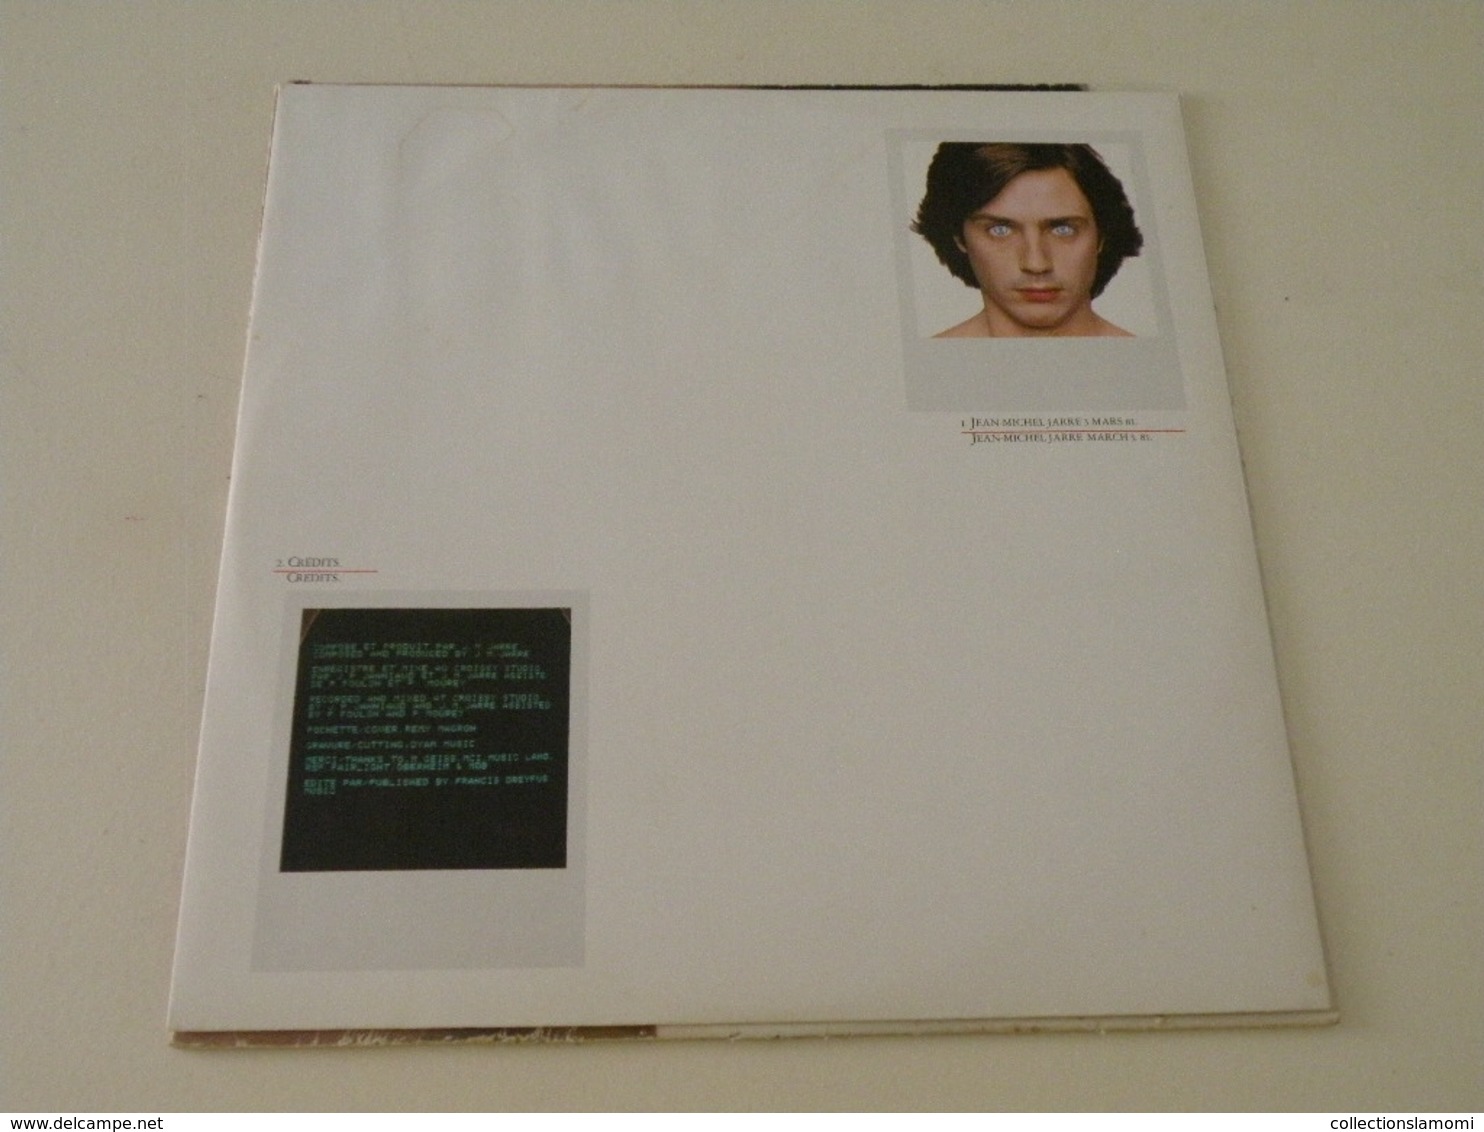 Jean Michel Jarre - Les Chants Magnétiques 1981 - (Titres Sur Photos) - Vinyle 33 T LP - Musicals